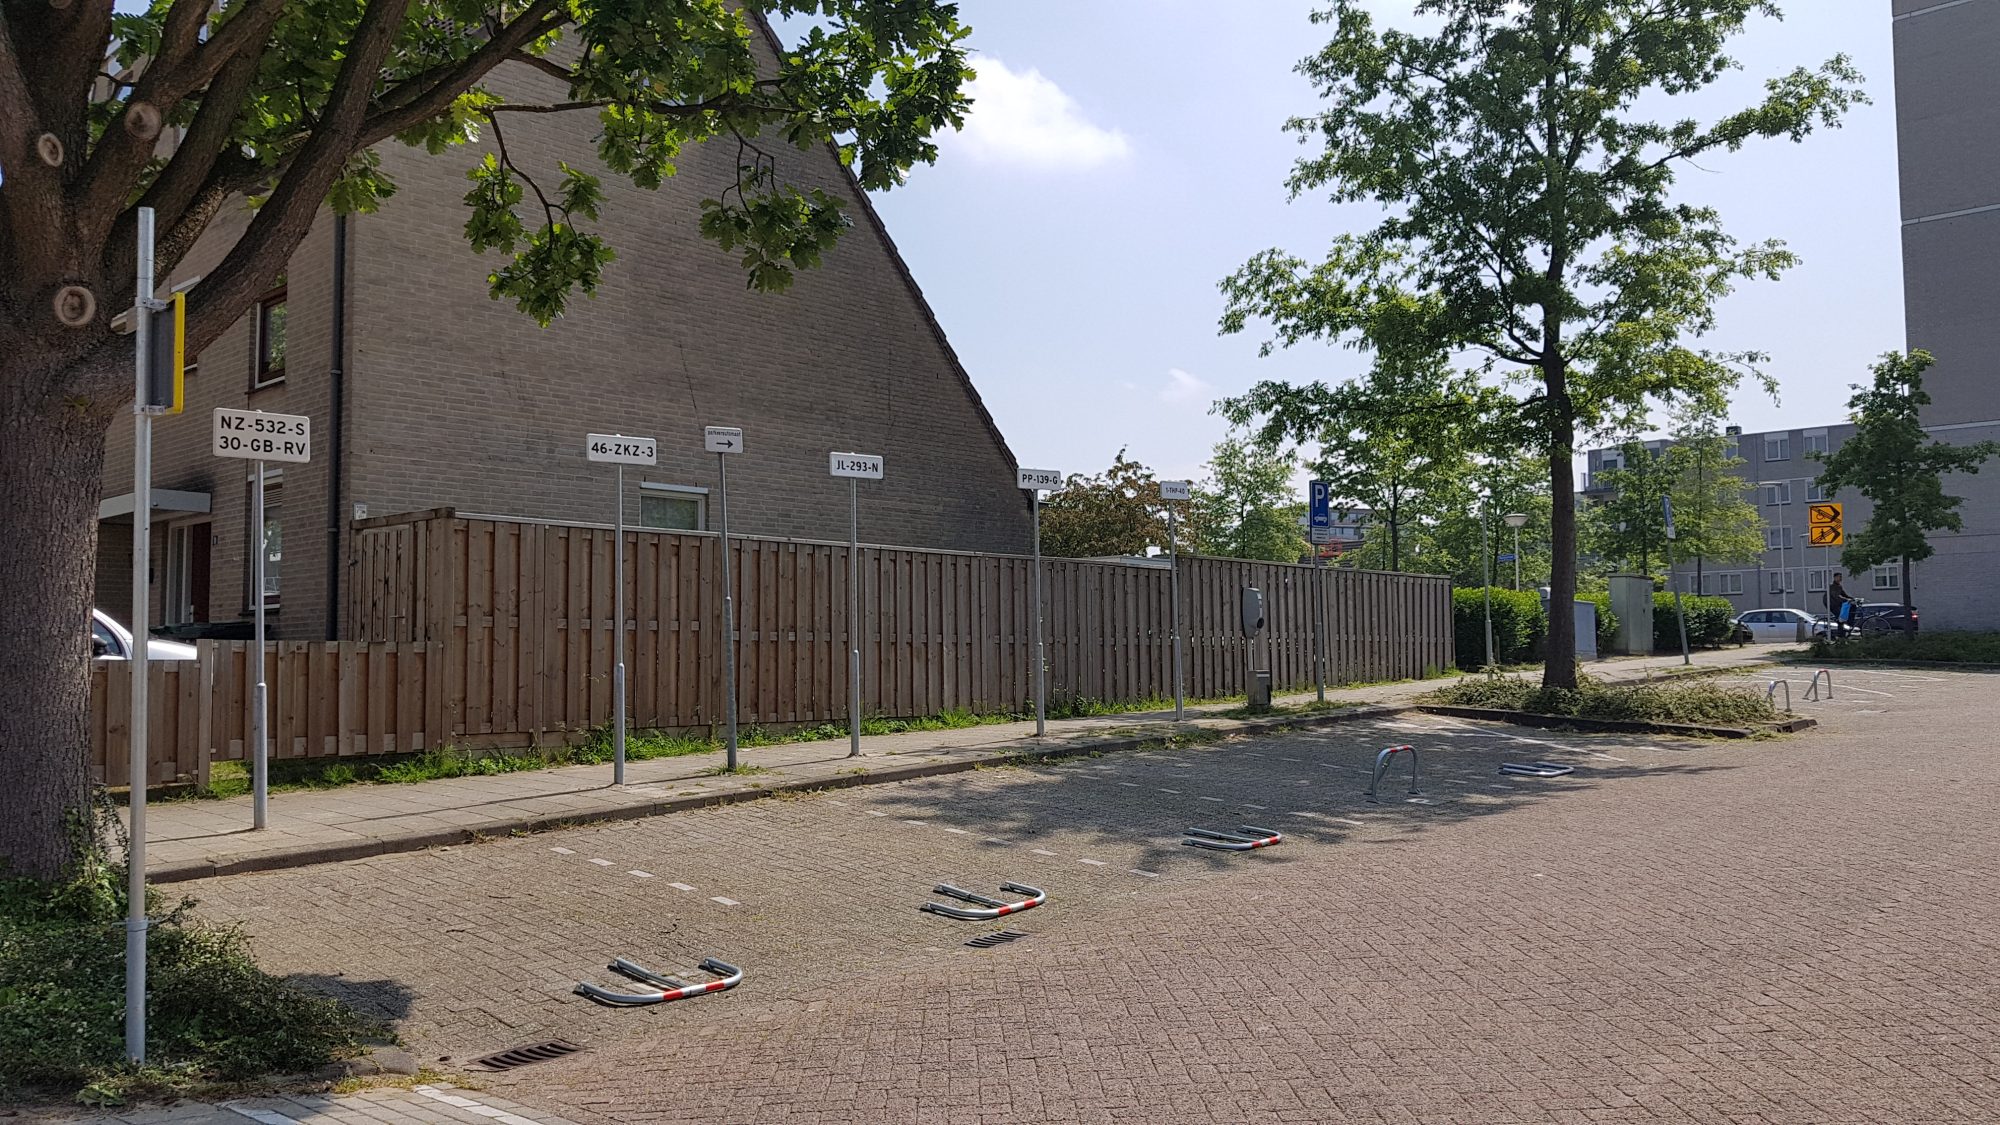 https://zoetermeer.pvda.nl/nieuws/vraagtekens-bij-parkeerplaatsen-voor-college/